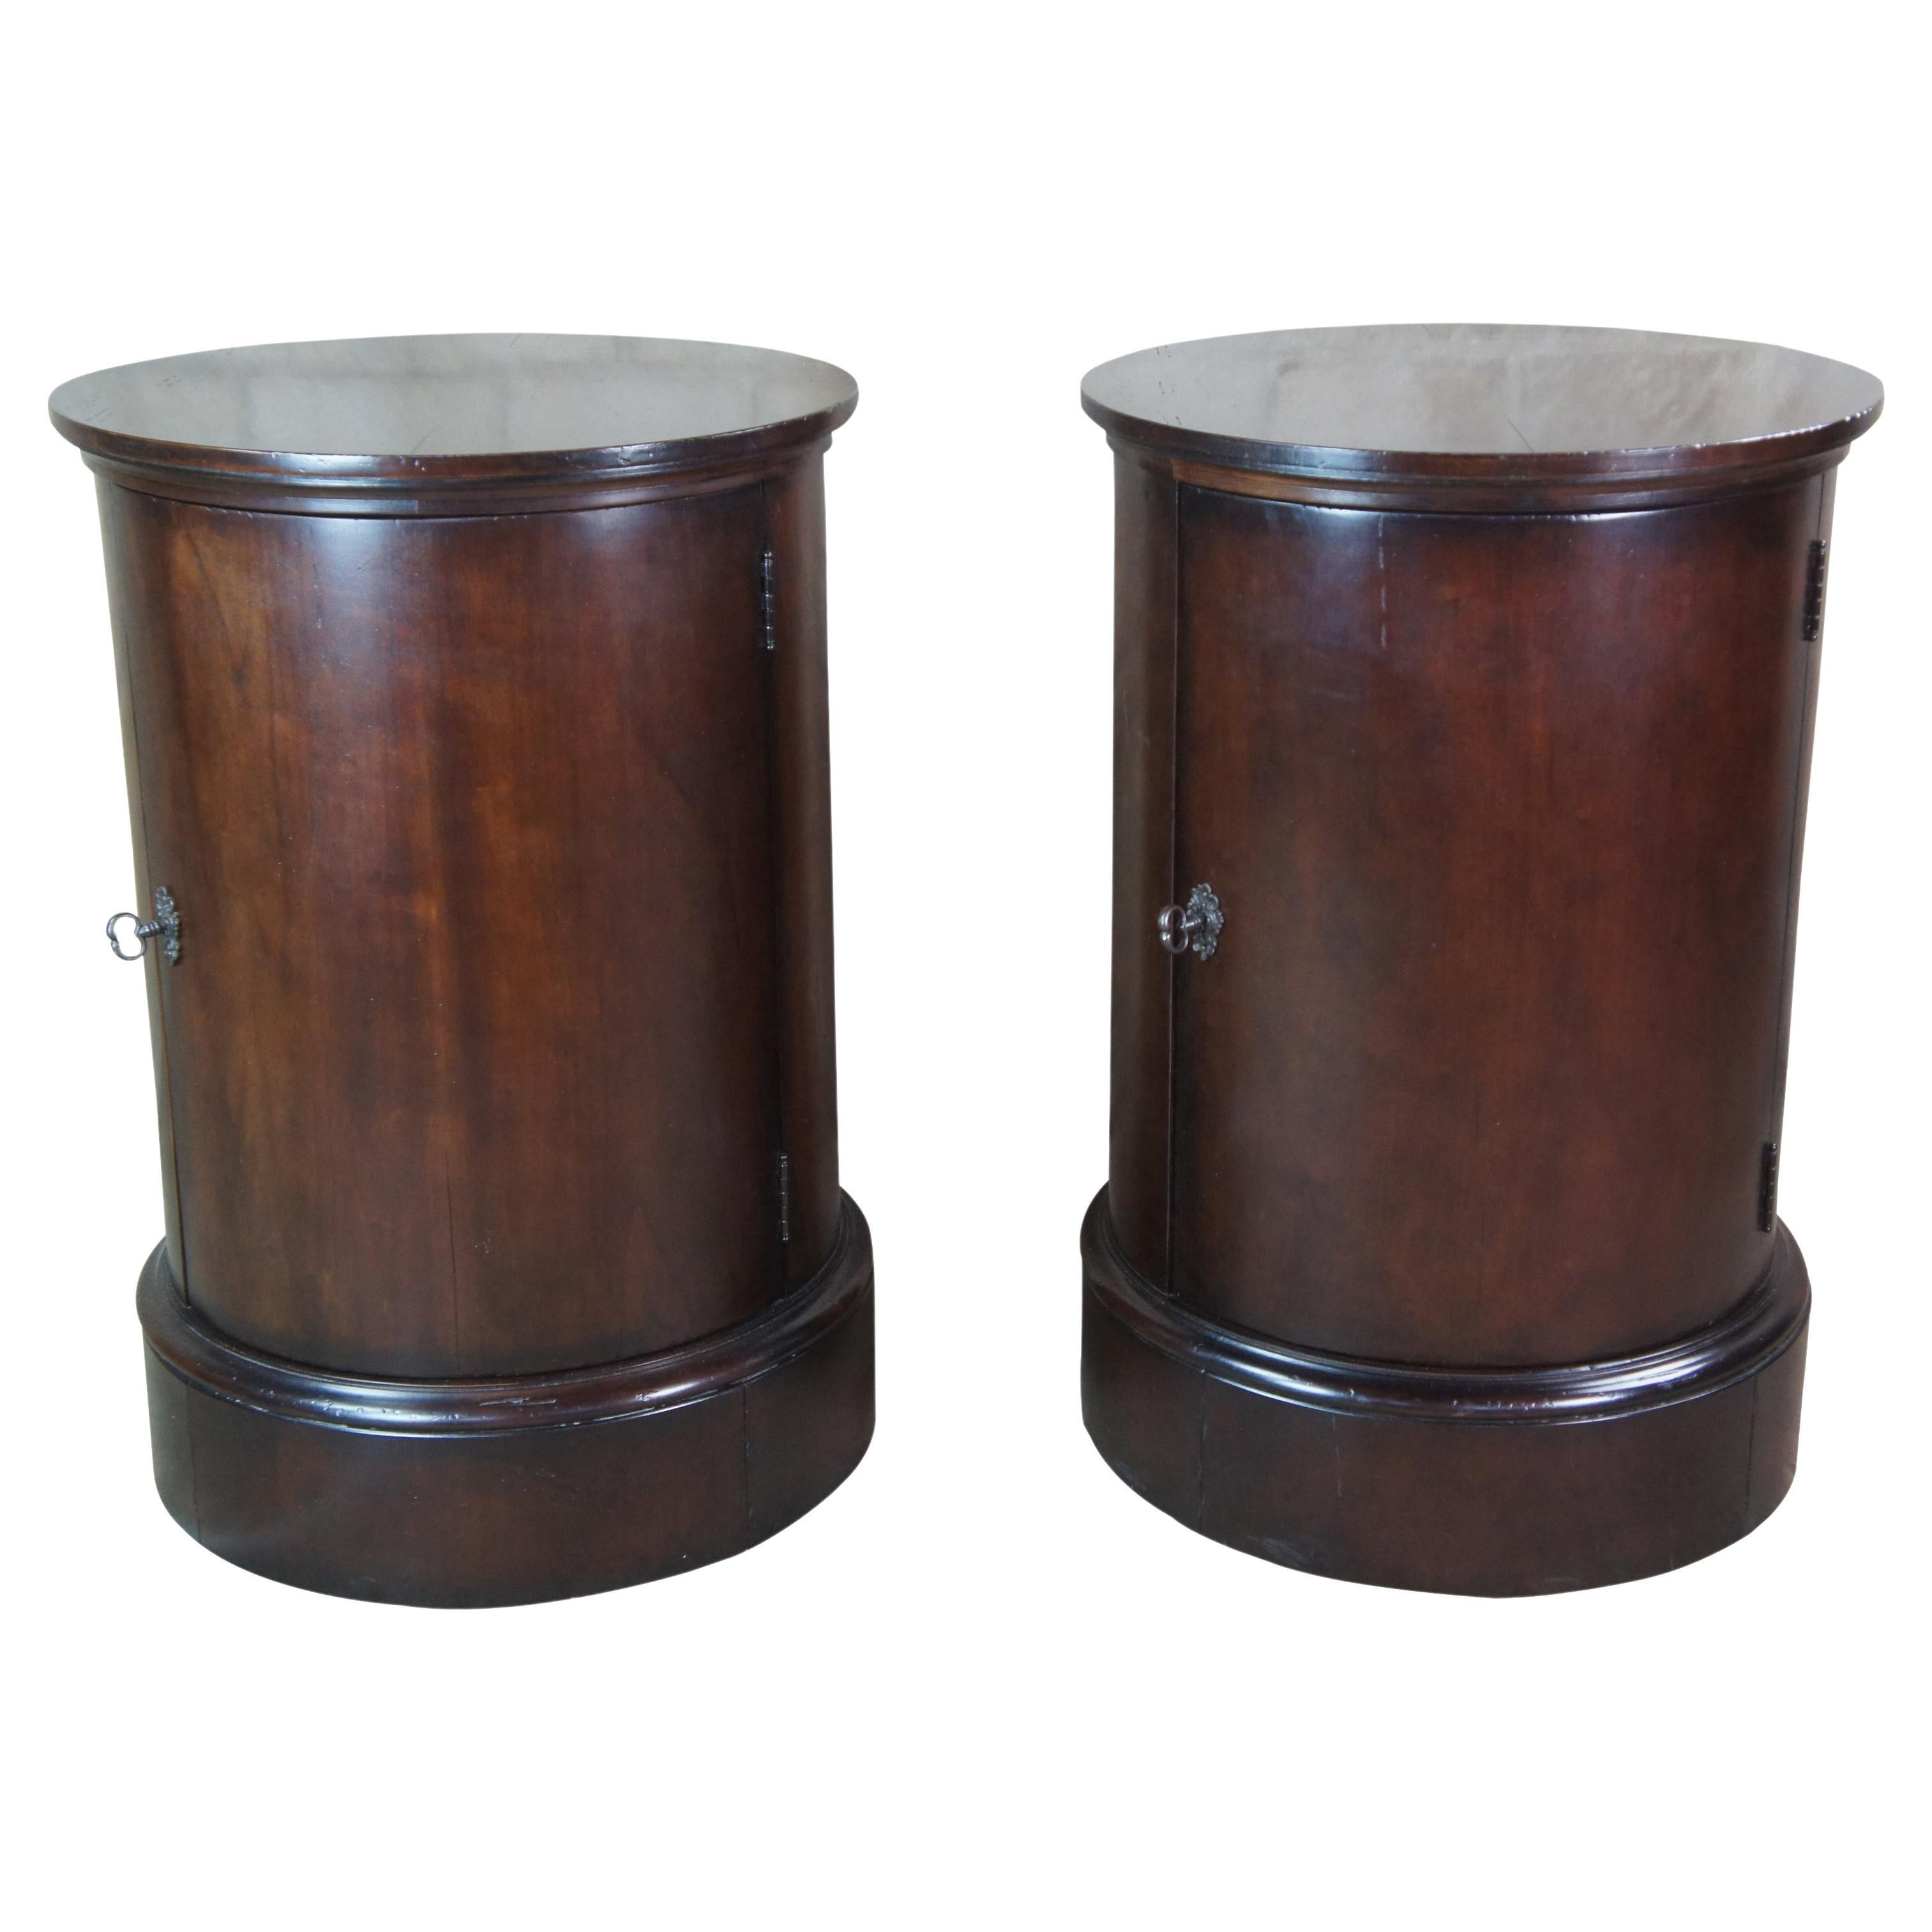 2 Ralph Lauren Henredon Mahogany Somno Drum Tables Nightstands Bedside Cabinets